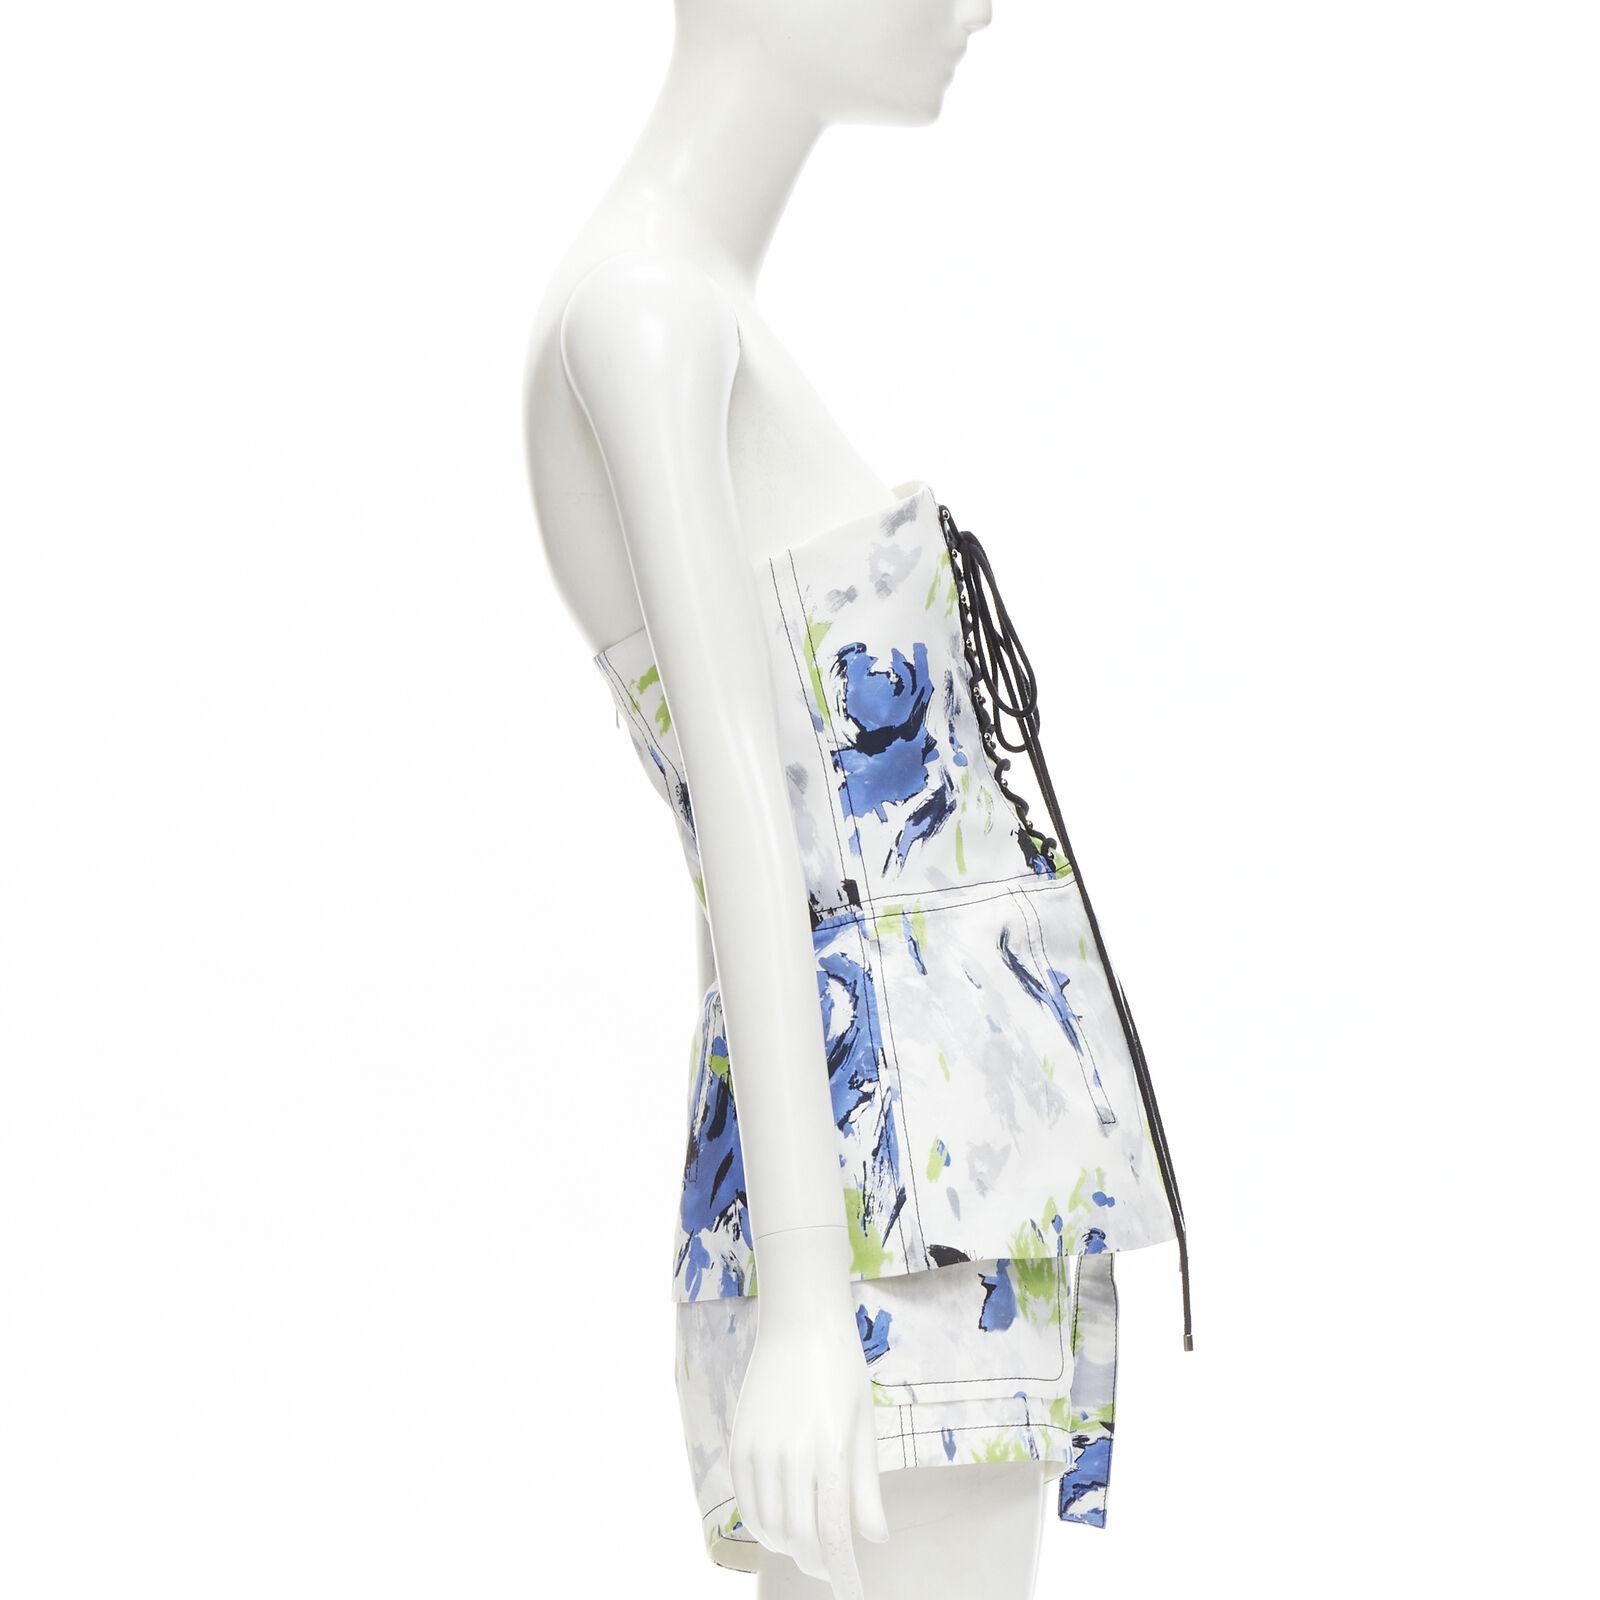 PHILOSOPHY DI LORENZO SERAFINI - Haut corset blanc imprimé éclaboussures, taille IT 40 XS Excellent état - En vente à Hong Kong, NT